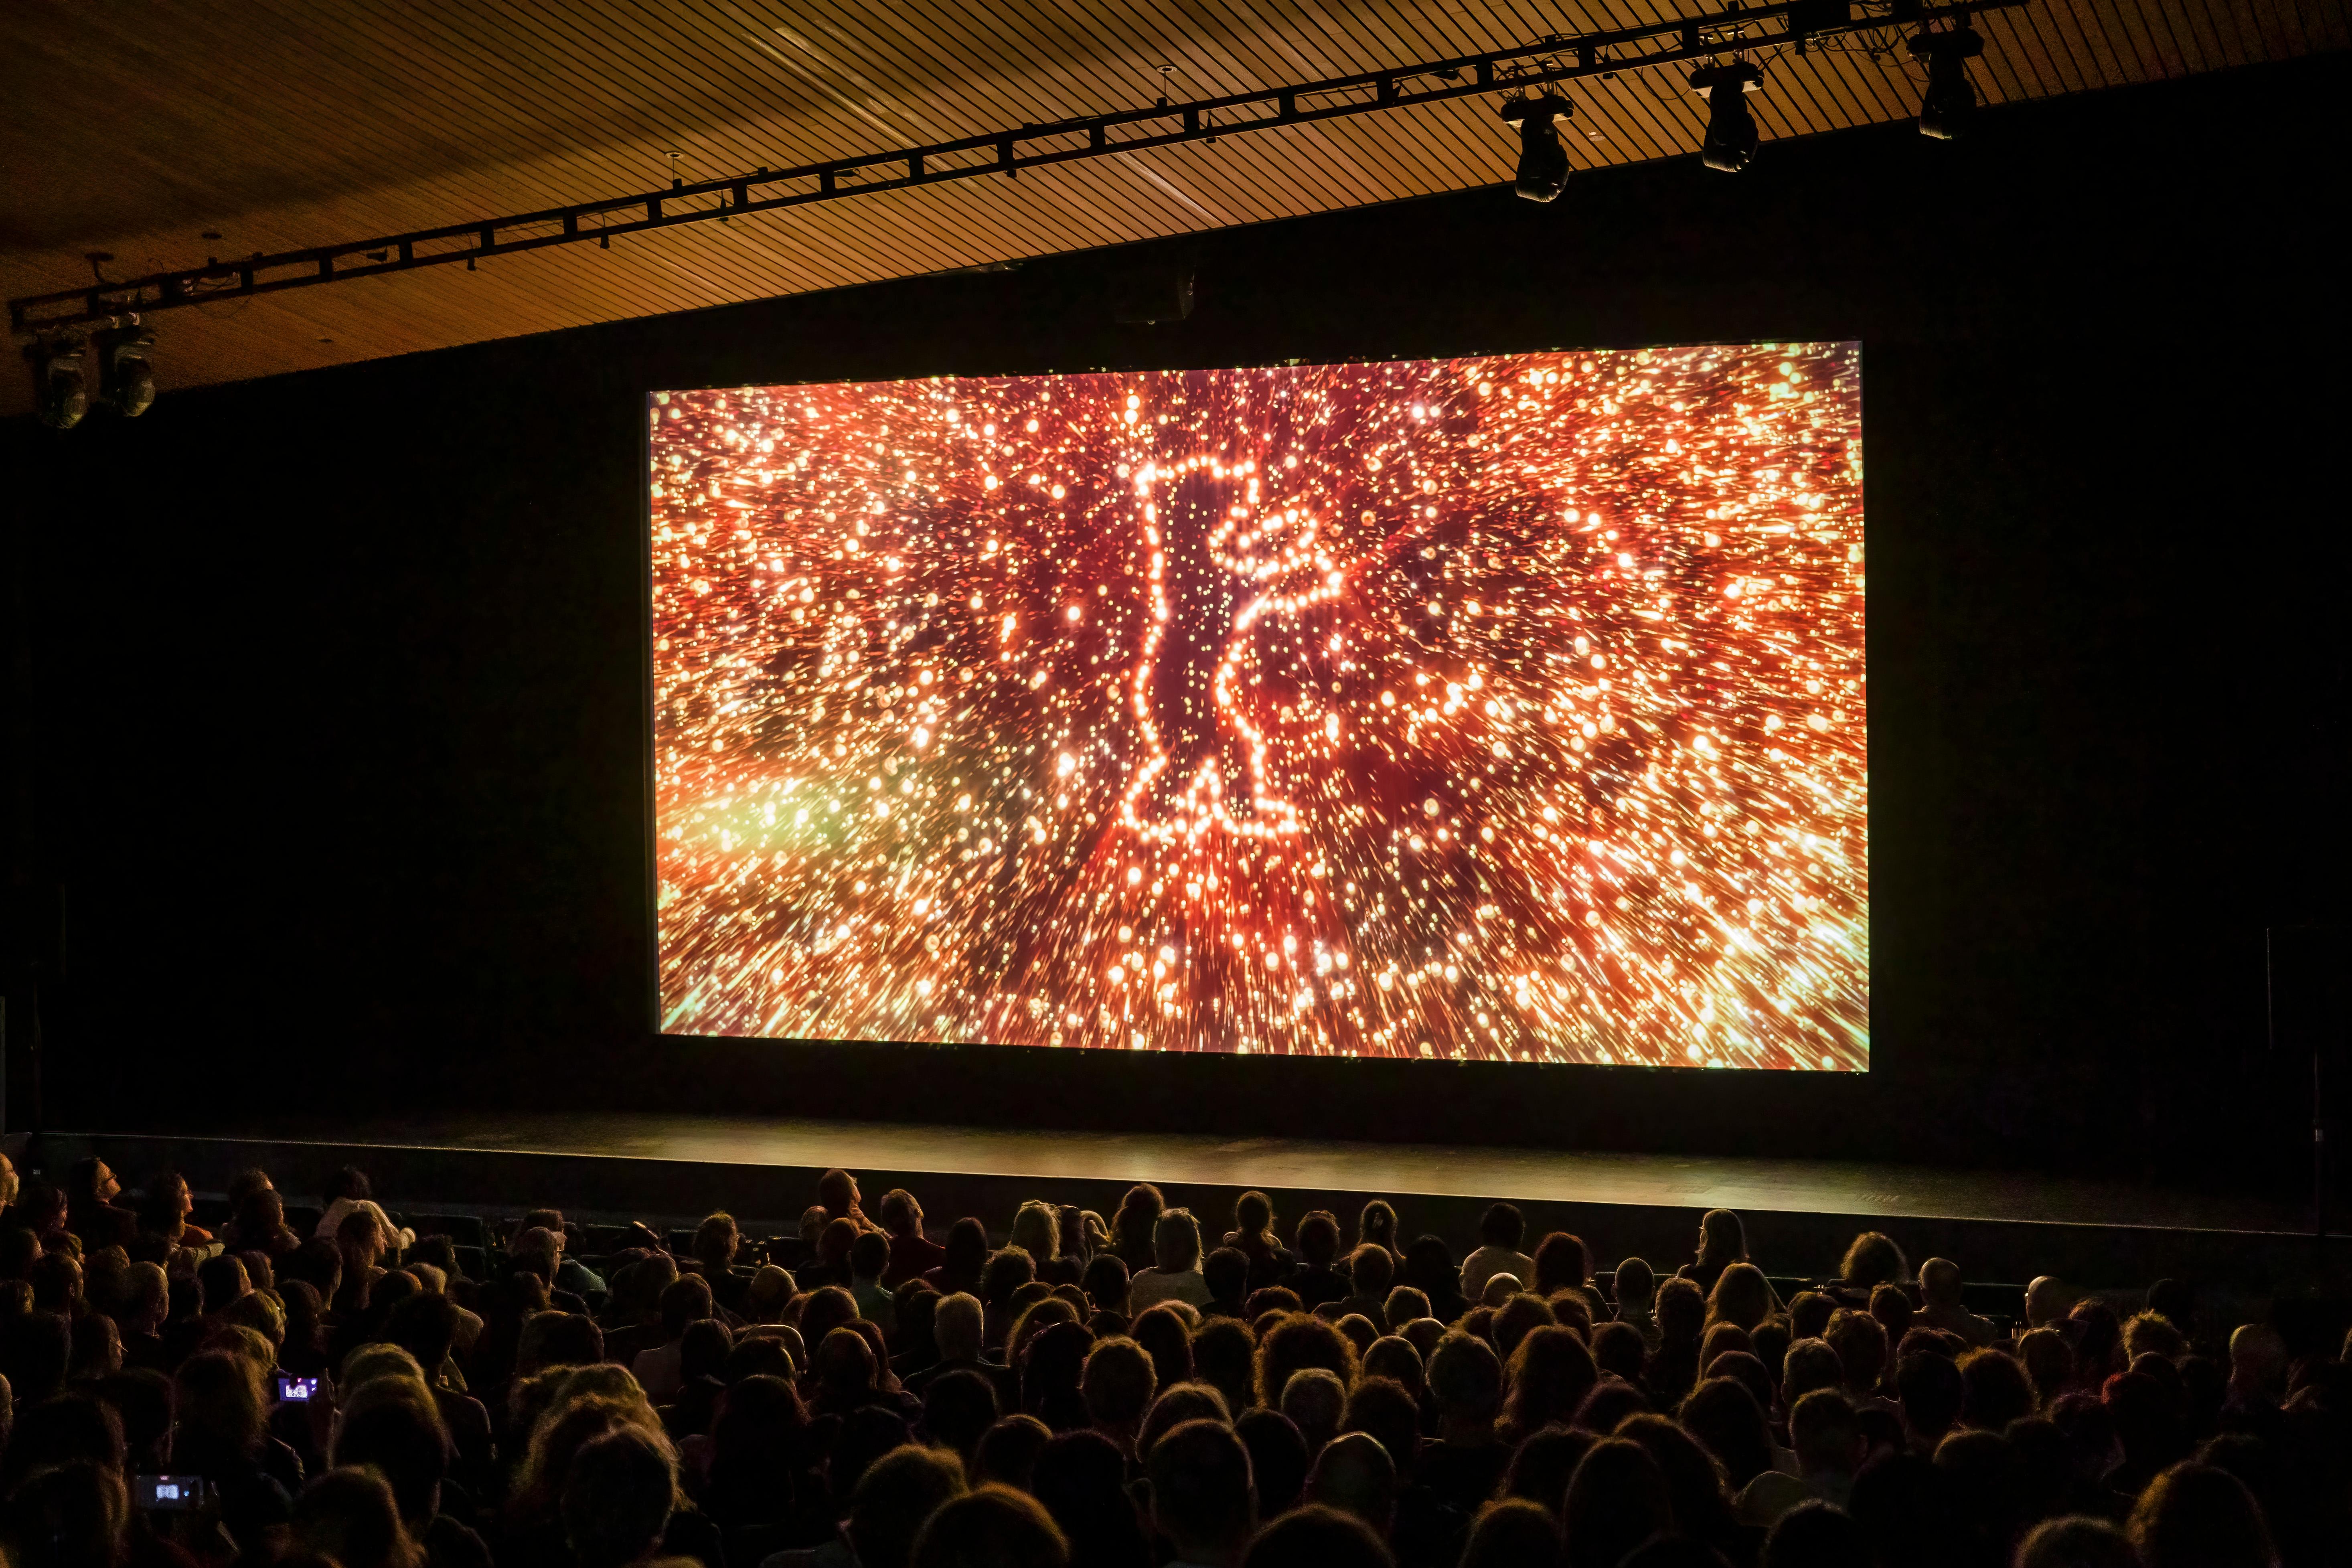 Der Kinosaal der Akademie der Künste mit Publikum. Auf der Leinwand ist der Trailer der Berlinale zu sehen. Der Trailer-Ausschnitt zeigt den Berlinale Bären im leuchtenden Feuerwerk.